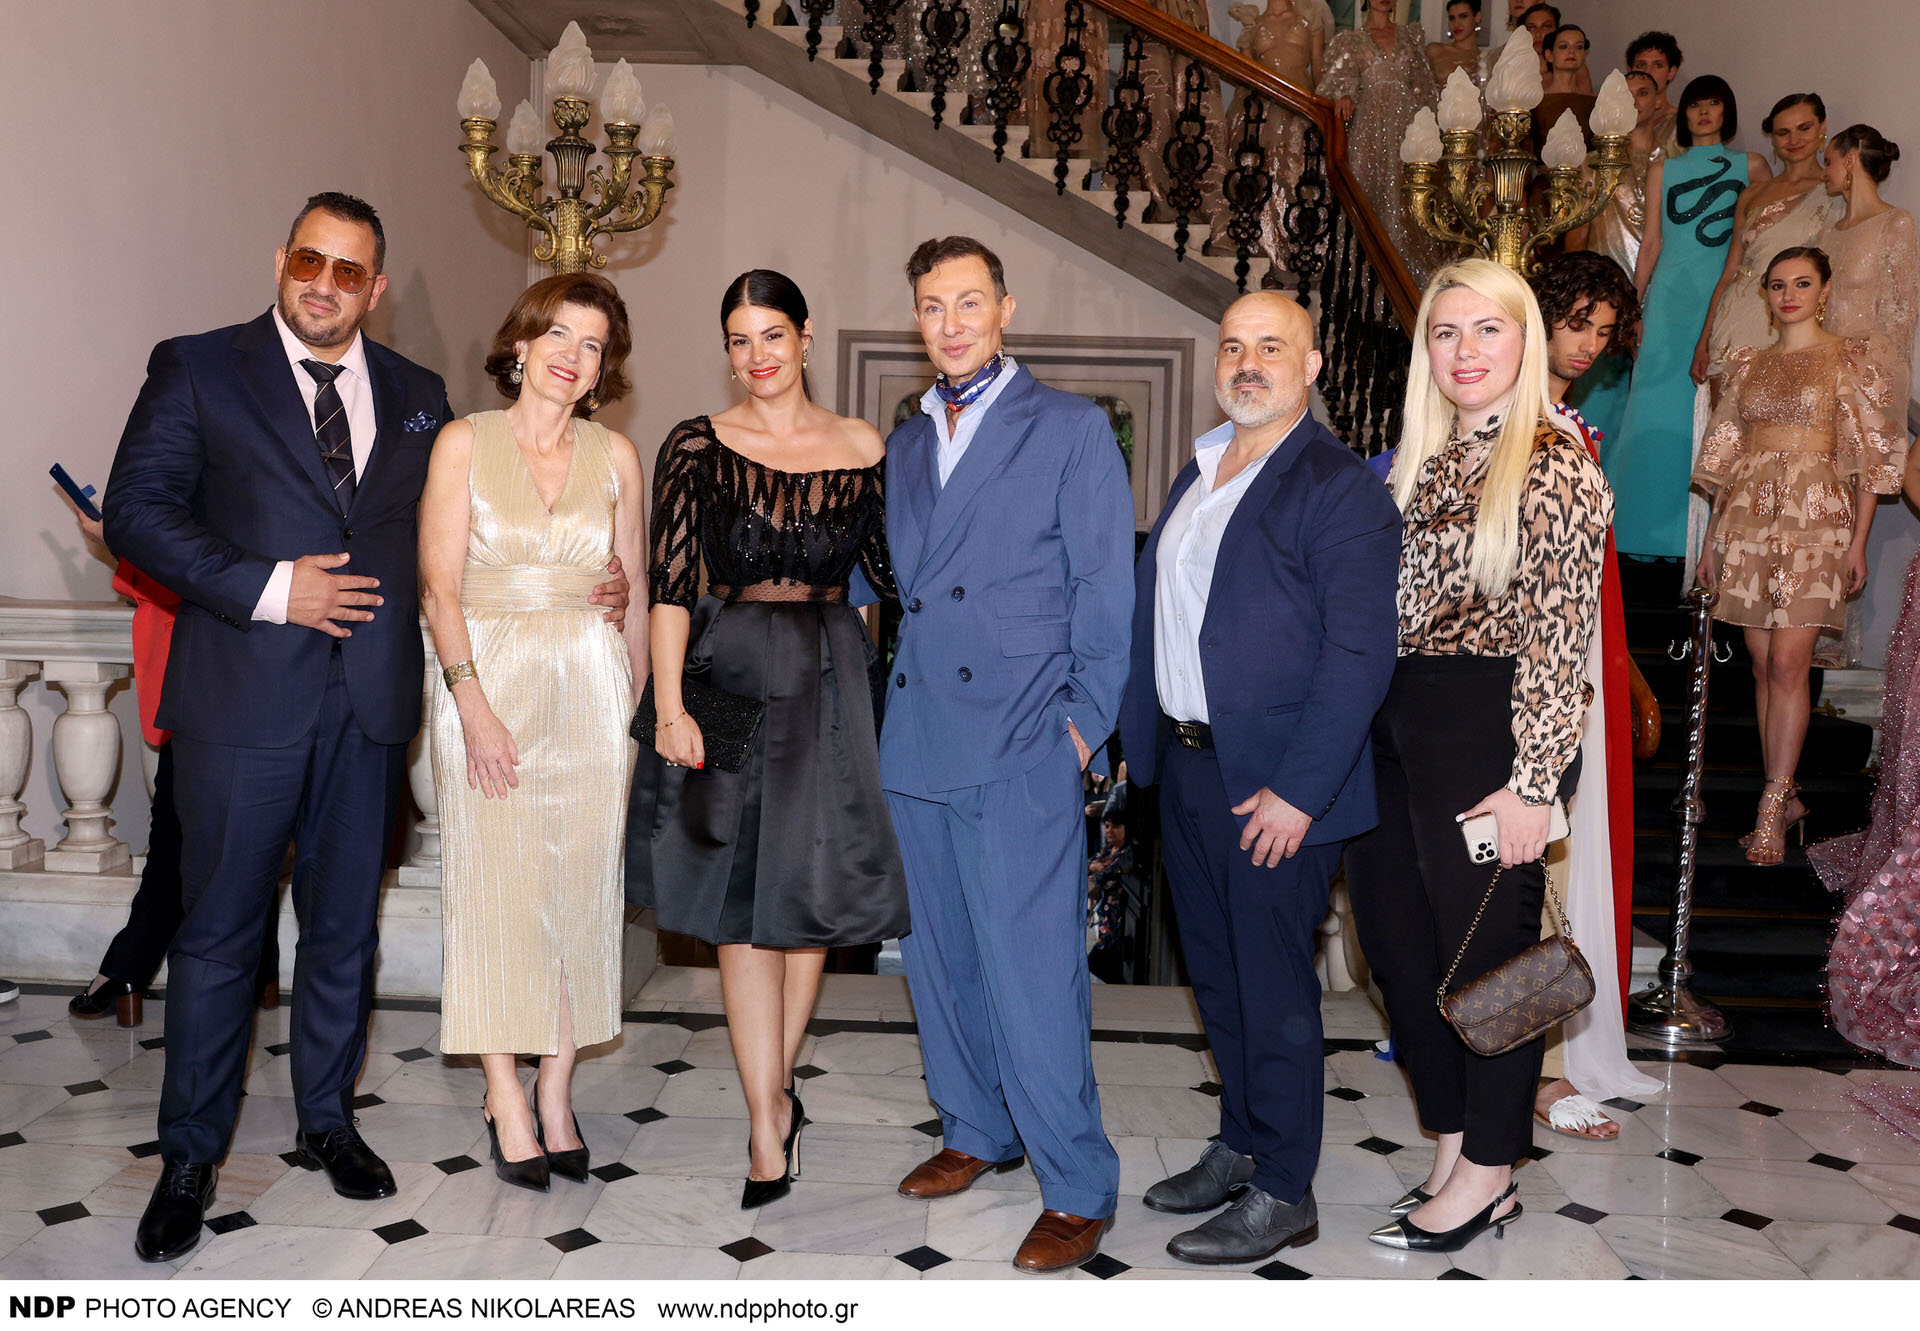 Ο Βασίλειος Κωστέτσος παρουσίασε την συλλογή του «L’Olympien Art Couture» στην Πρεσβεία της Γαλλίας